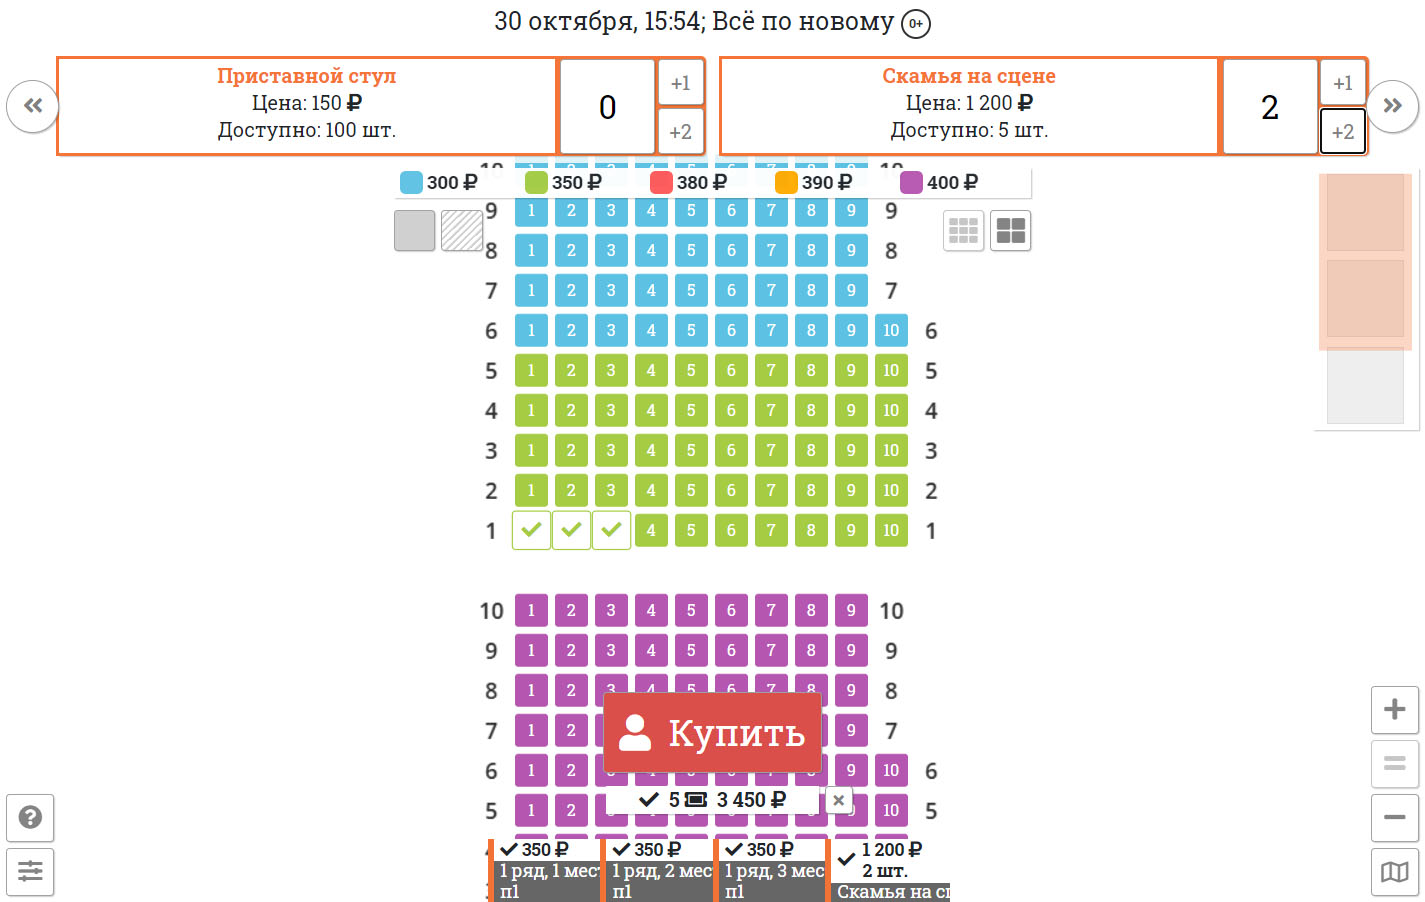 Как купить билет на концерт по пушкинской